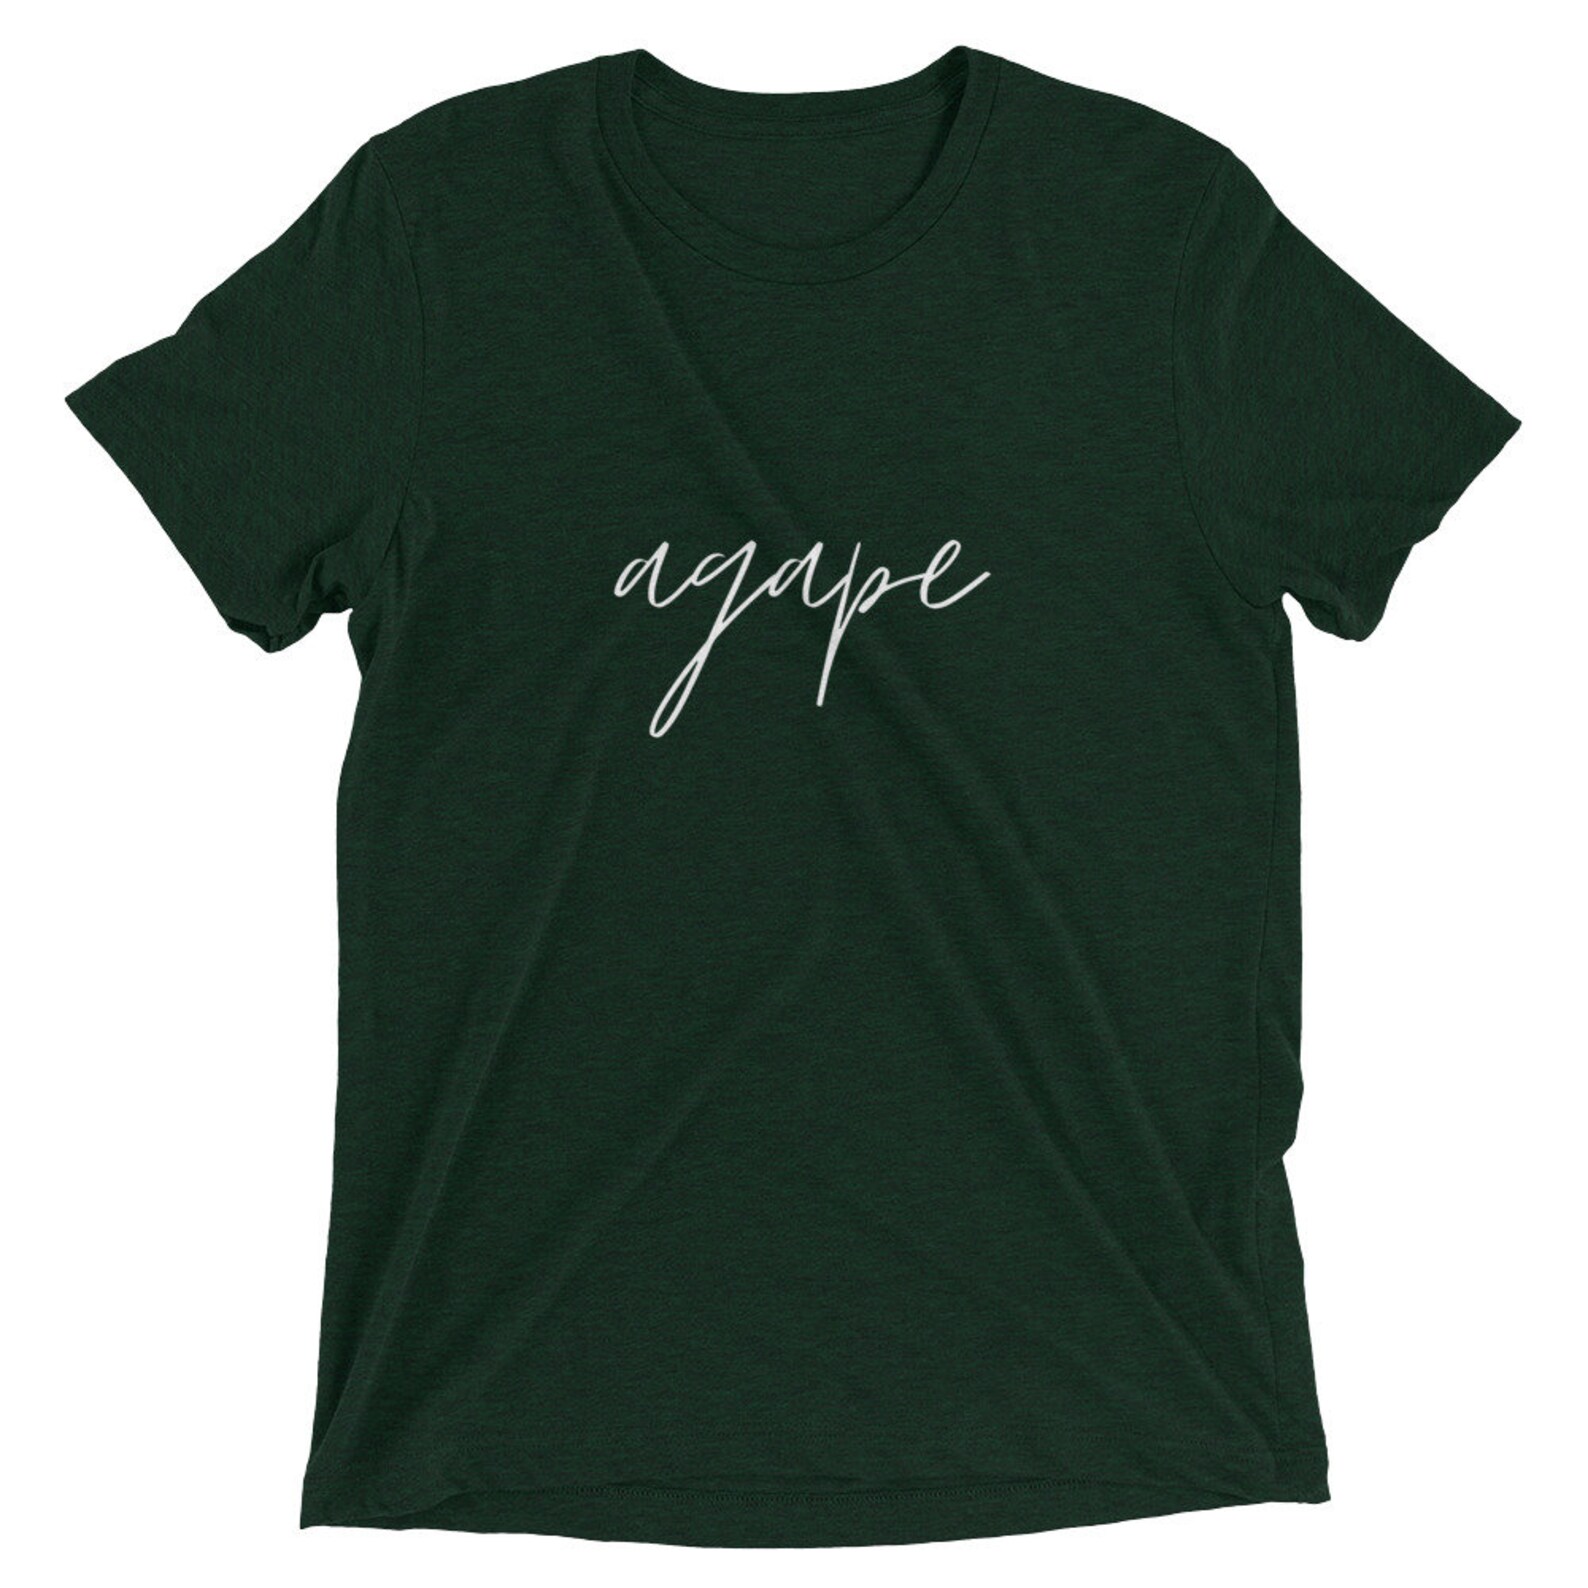 Agape Love Christian T-shirt Christian Apparel Men Women | Etsy